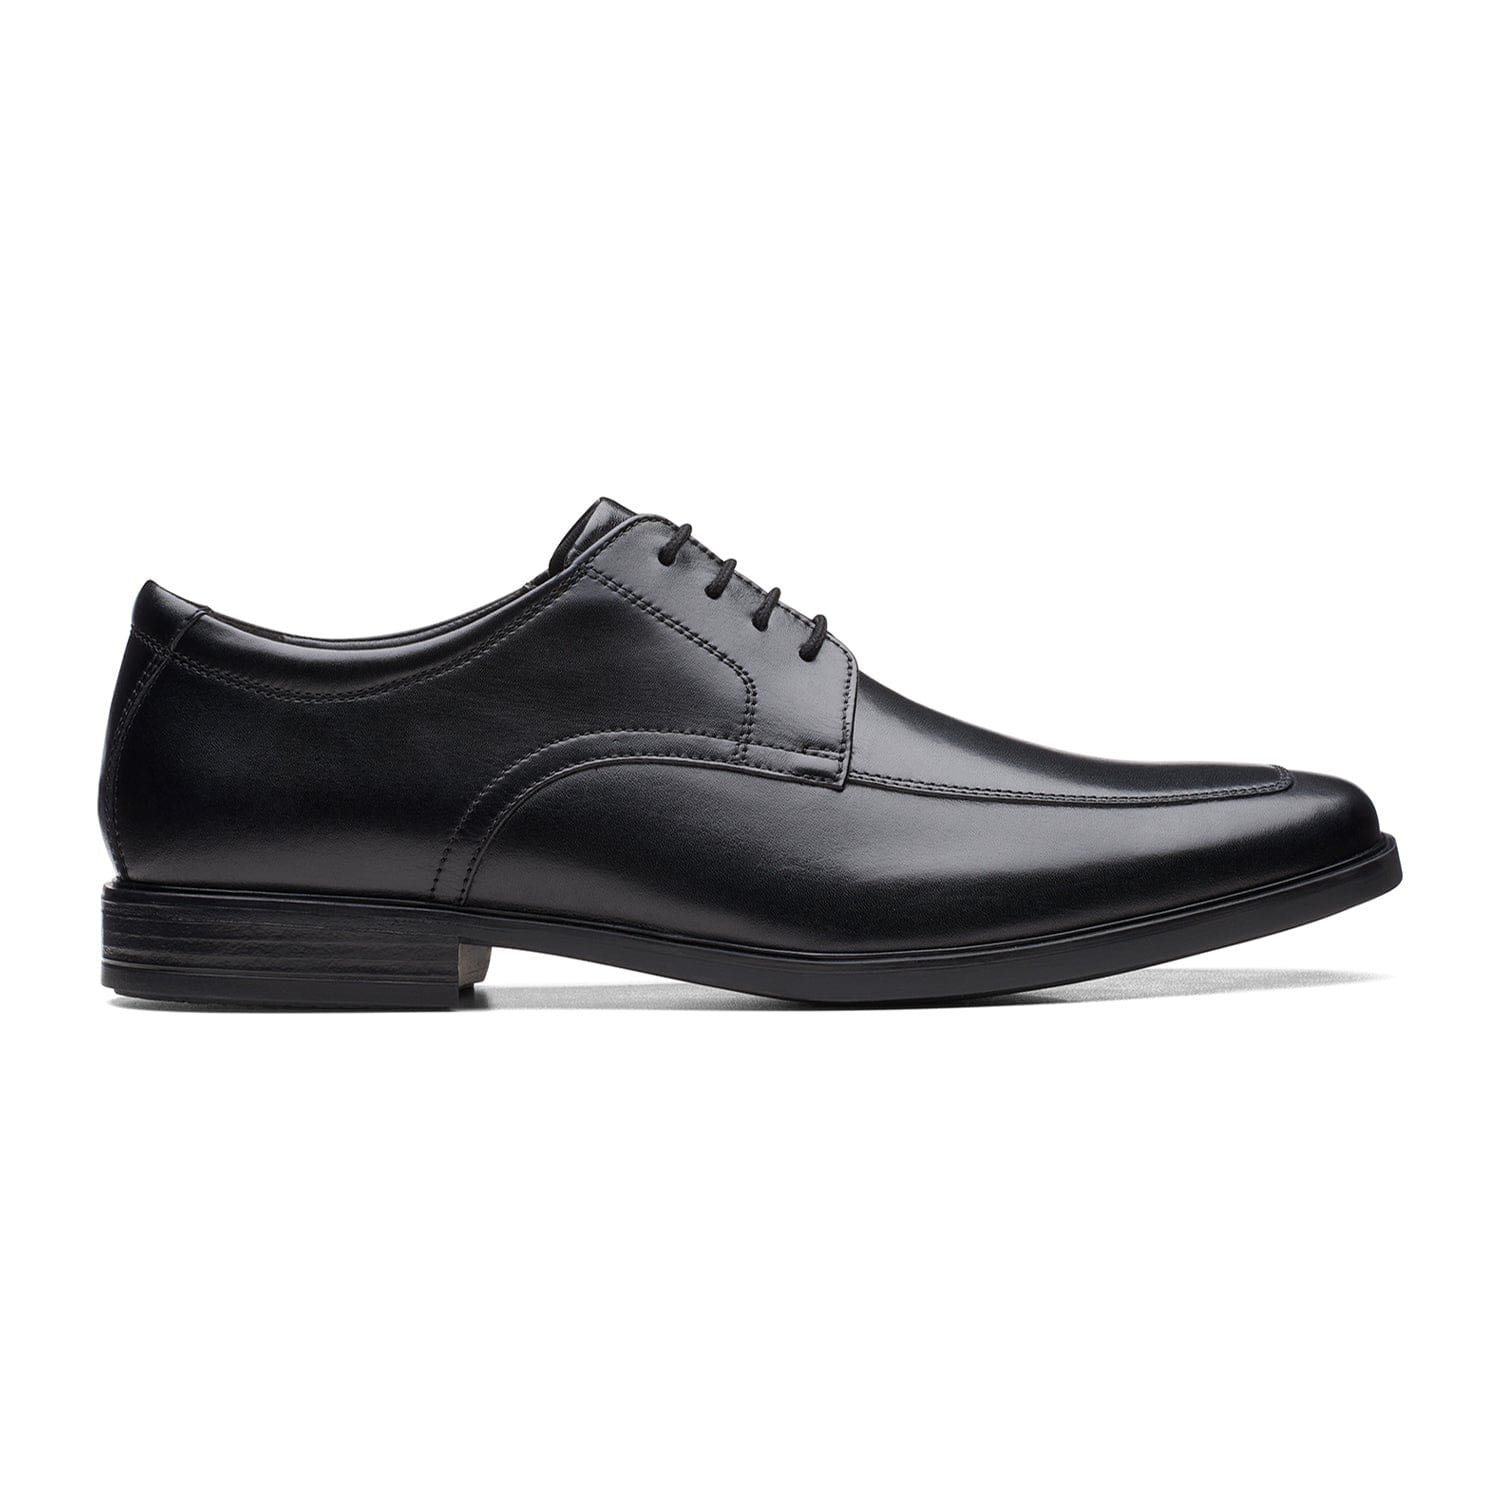 Clarks Howard Apron حذاء - جلد أسود - 261621778 - عرض H (مقاس عريض)